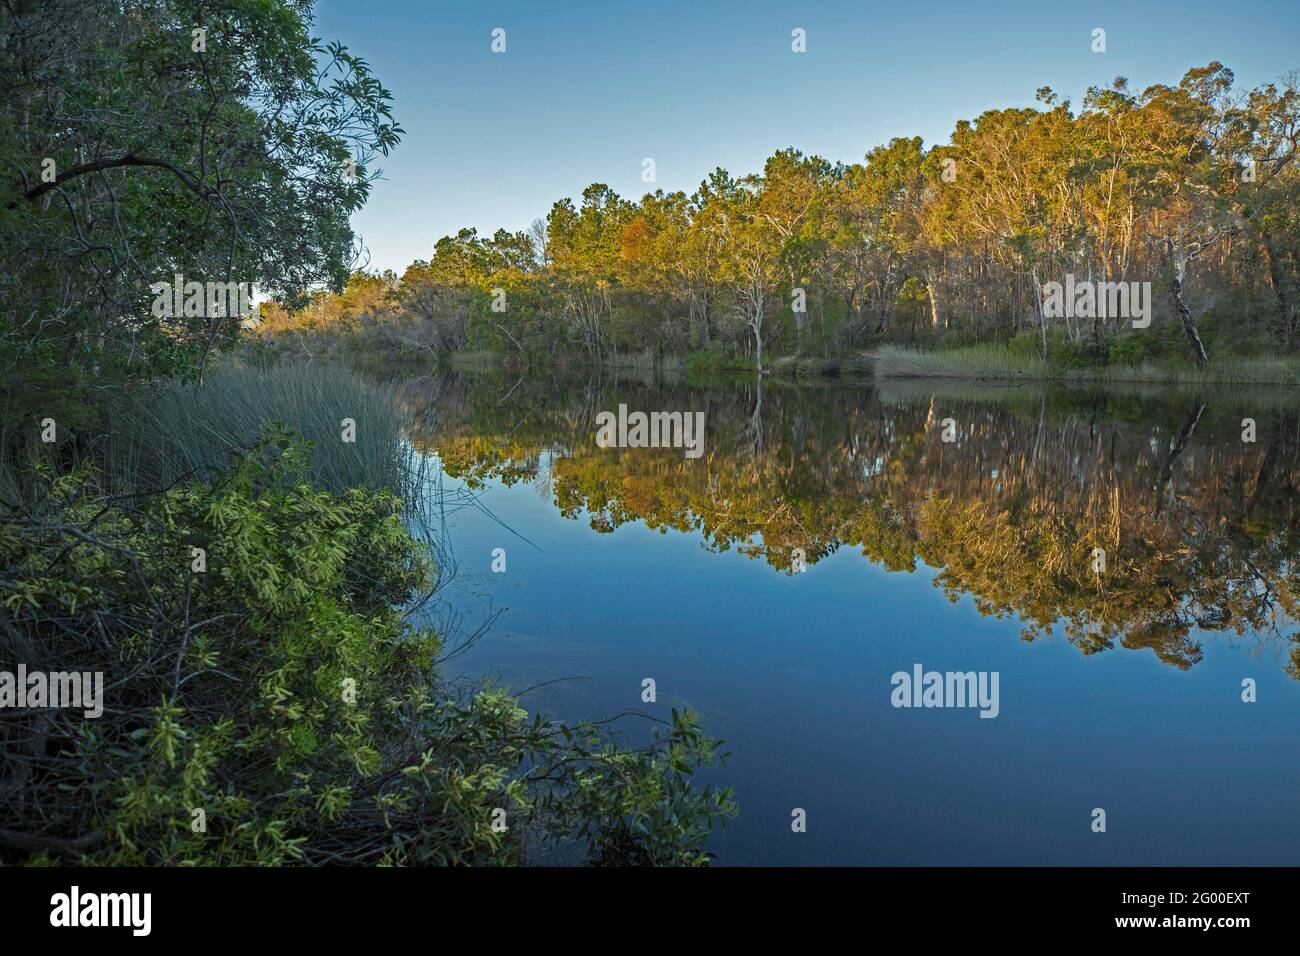 Einheimische Vegetation und blauer Himmel spiegeln sich in der spiegelnden Oberfläche des ruhigen dunklen Wassers des Noosa River, Sunshine Coast, Queensland Australia Stockfoto